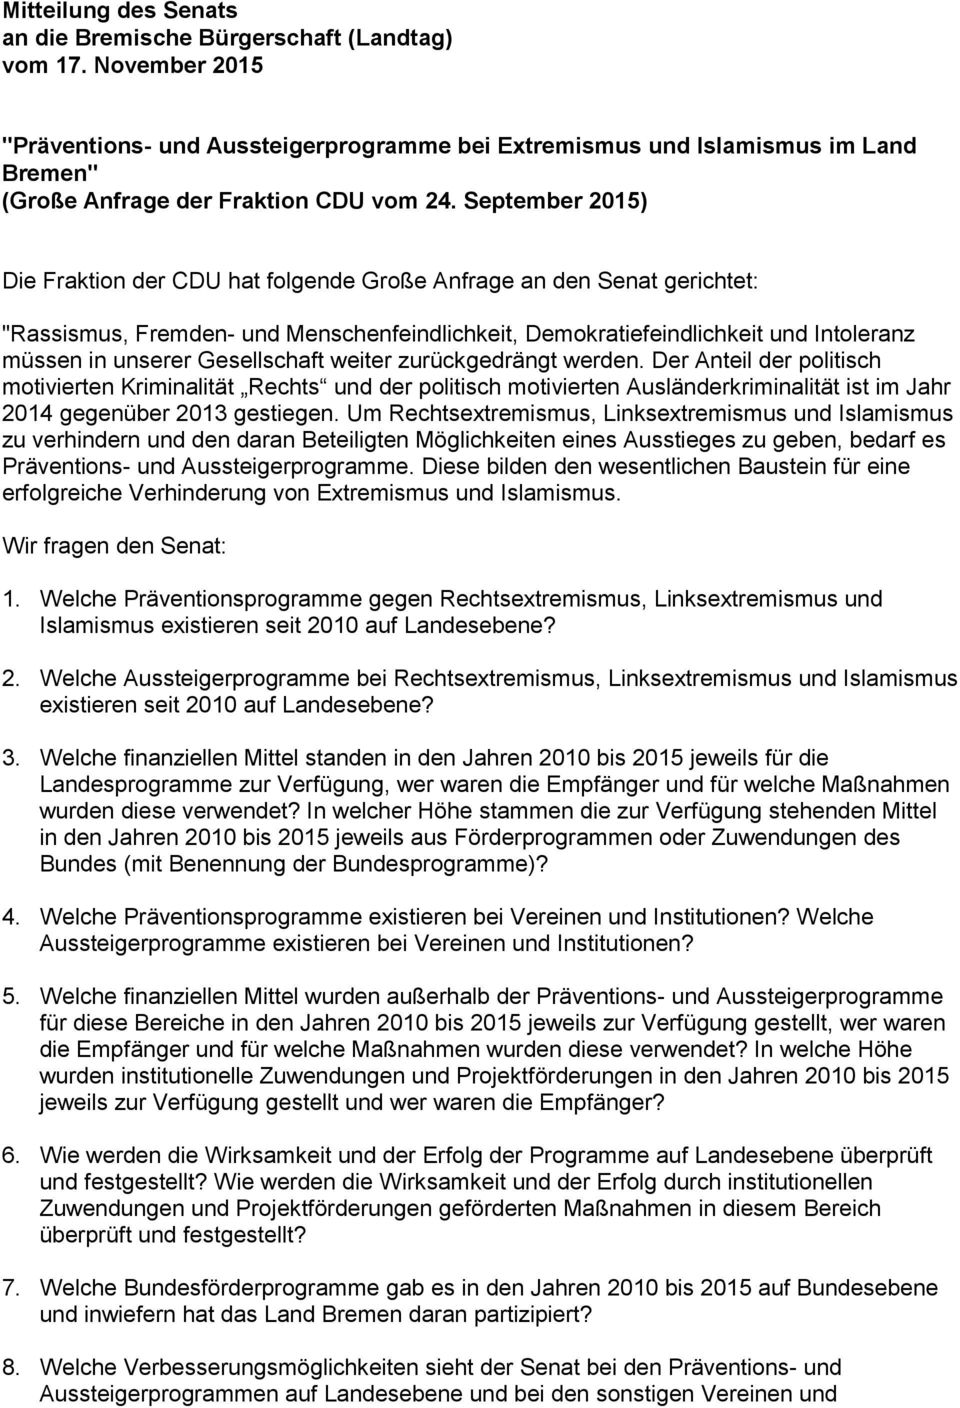 September 2015) Die Fraktion der CDU hat folgende Große Anfrage an den Senat gerichtet: "Rassismus, Fremden- und Menschenfeindlichkeit, Demokratiefeindlichkeit und Intoleranz müssen in unserer